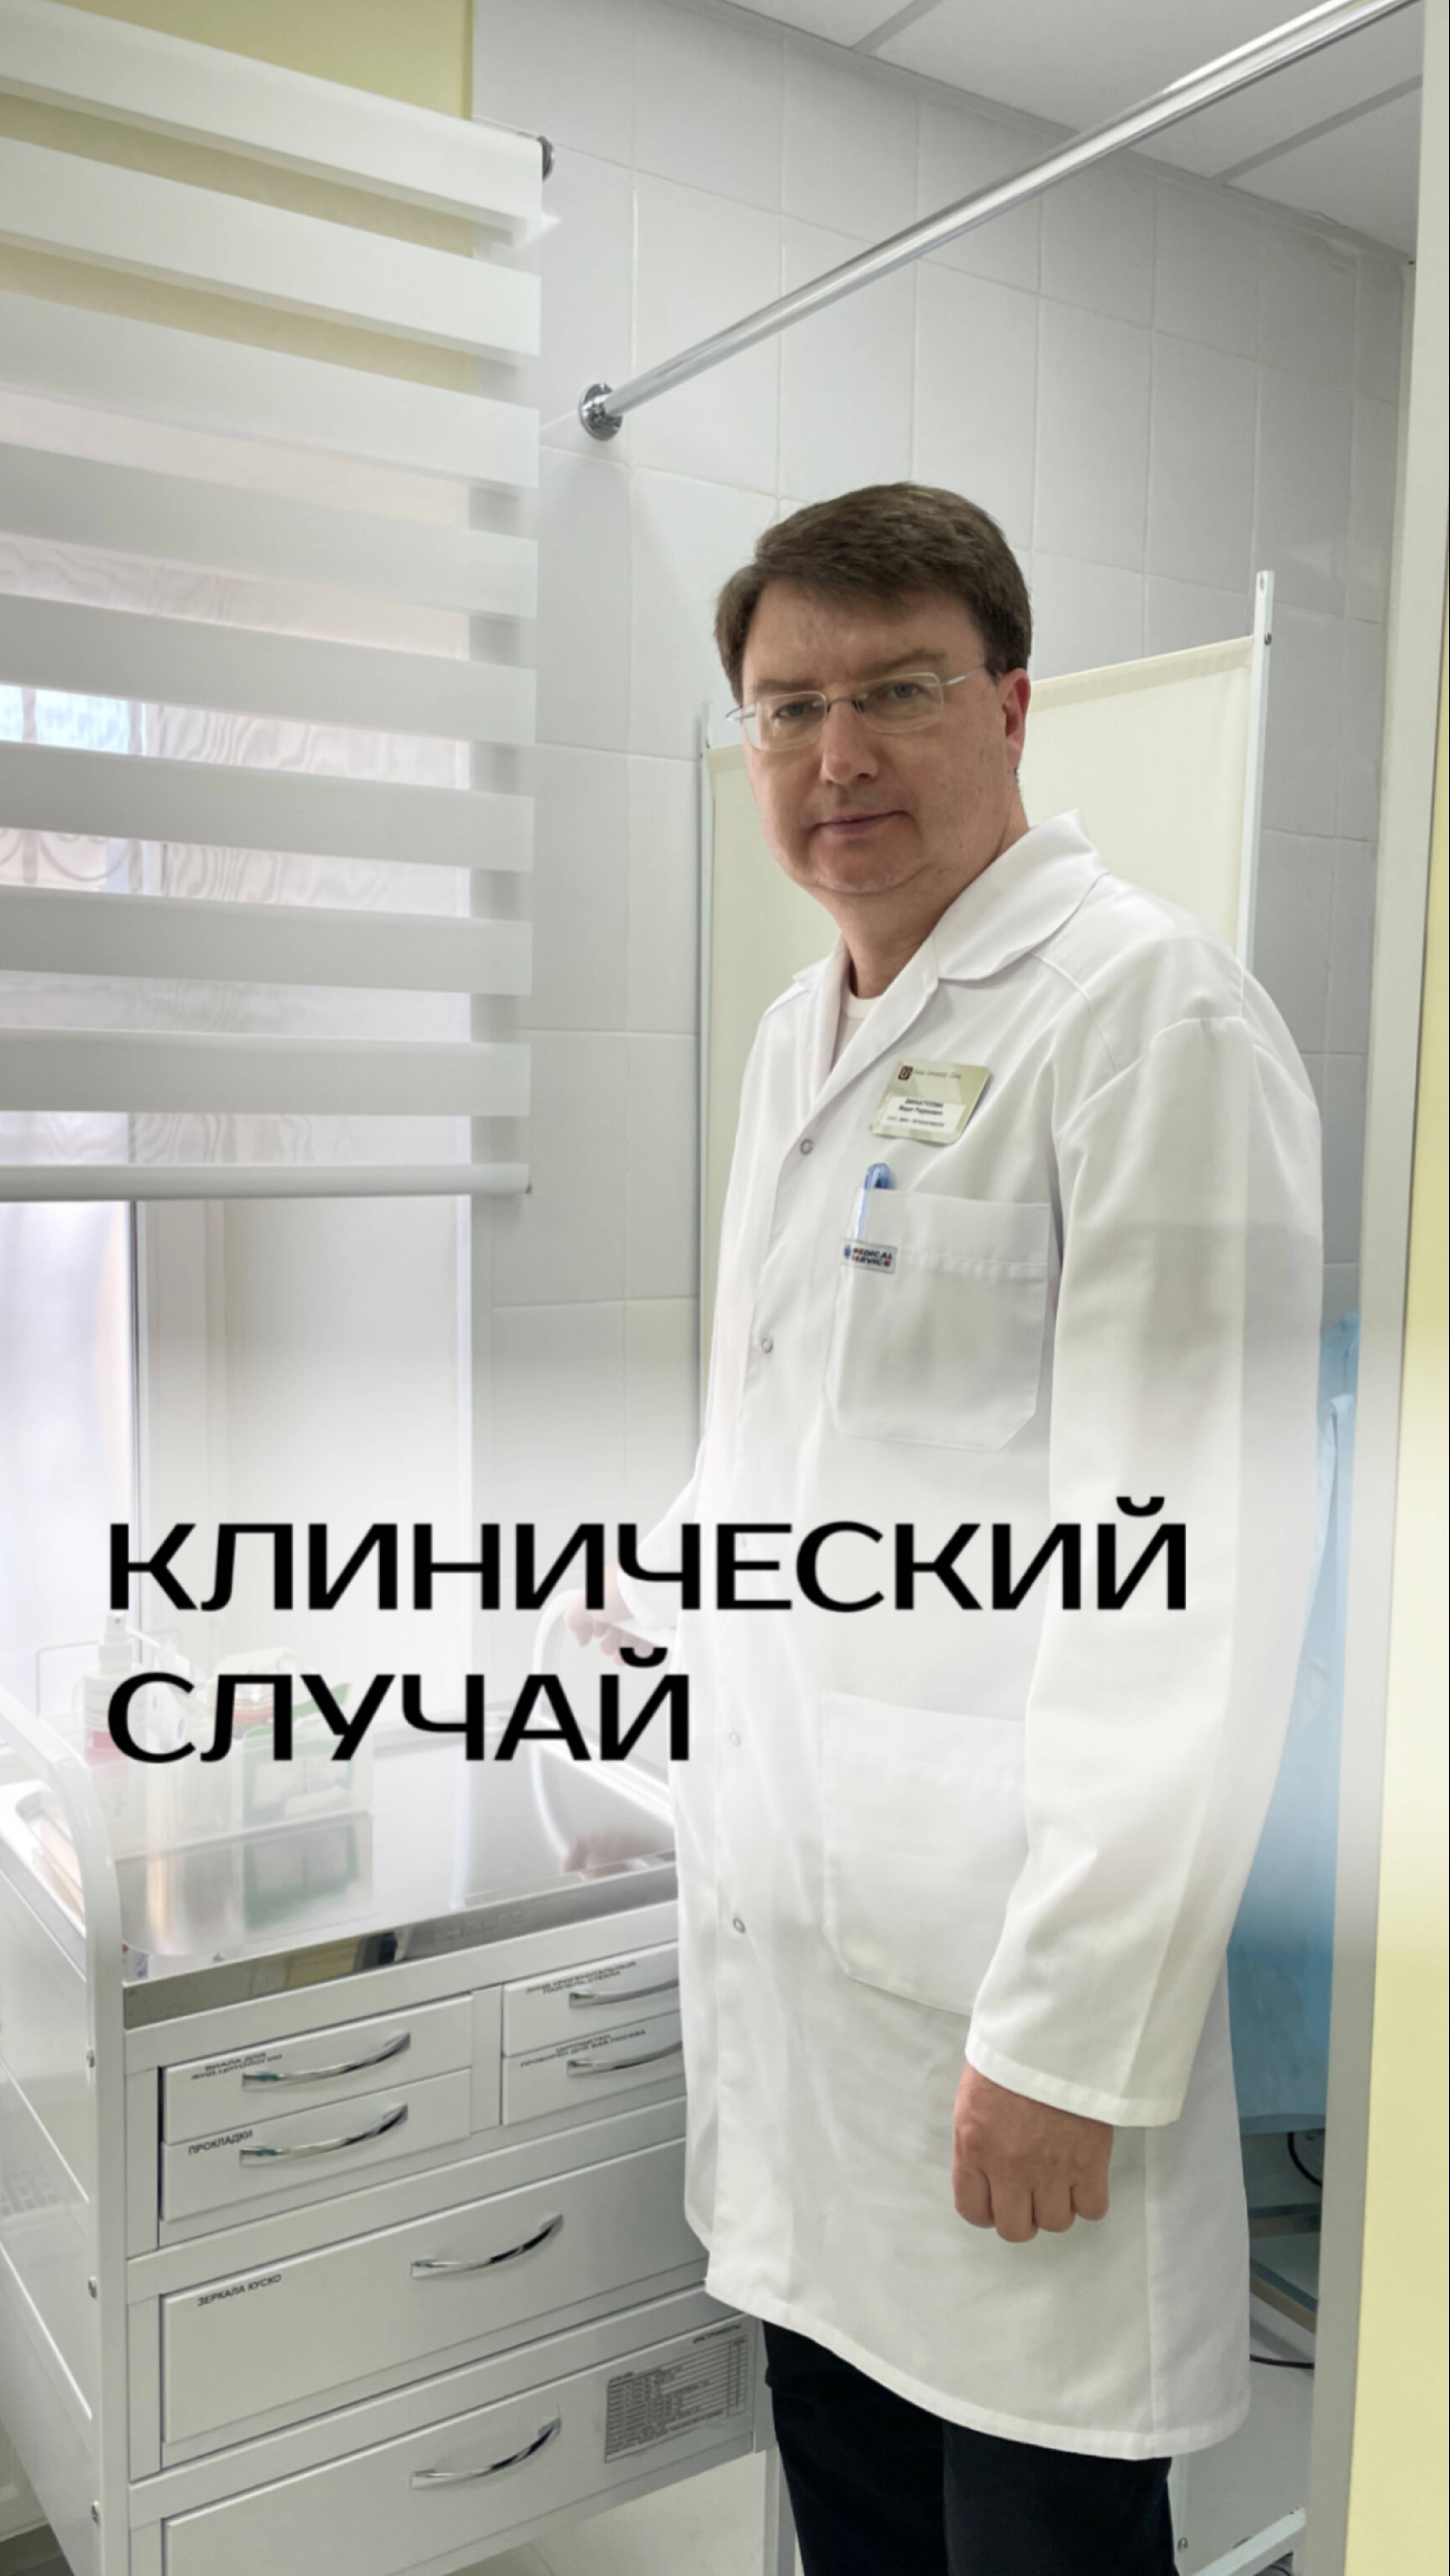 Записаться на онлайн-консультацию ко мне можно на сайте http://doctor-gastro.ru